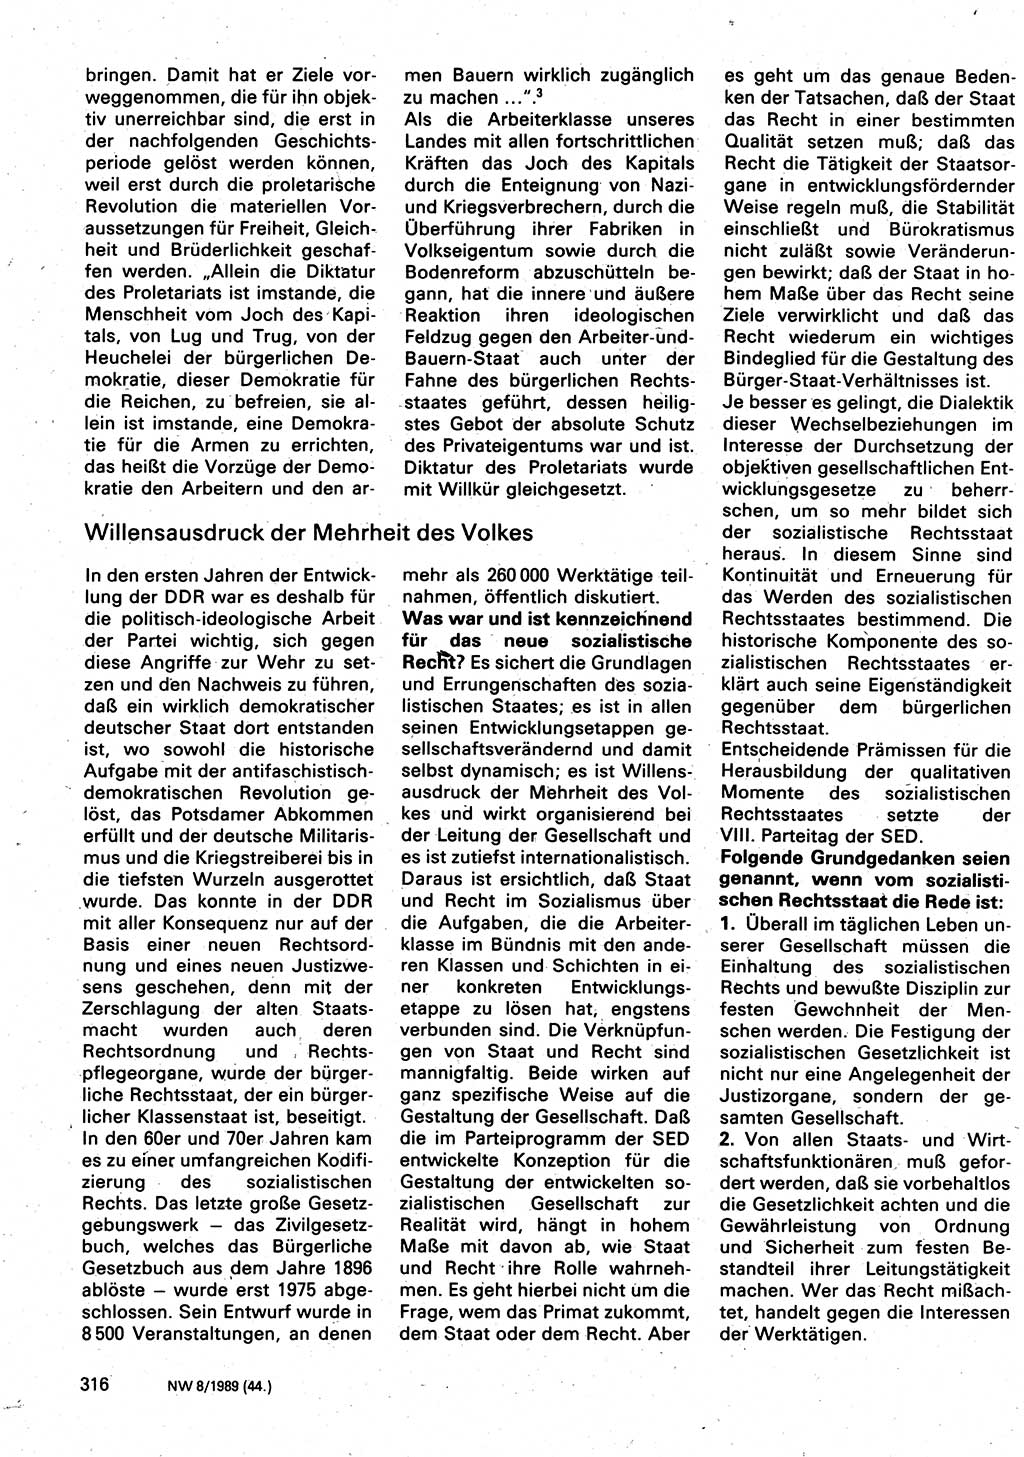 Neuer Weg (NW), Organ des Zentralkomitees (ZK) der SED (Sozialistische Einheitspartei Deutschlands) für Fragen des Parteilebens, 44. Jahrgang [Deutsche Demokratische Republik (DDR)] 1989, Seite 316 (NW ZK SED DDR 1989, S. 316)